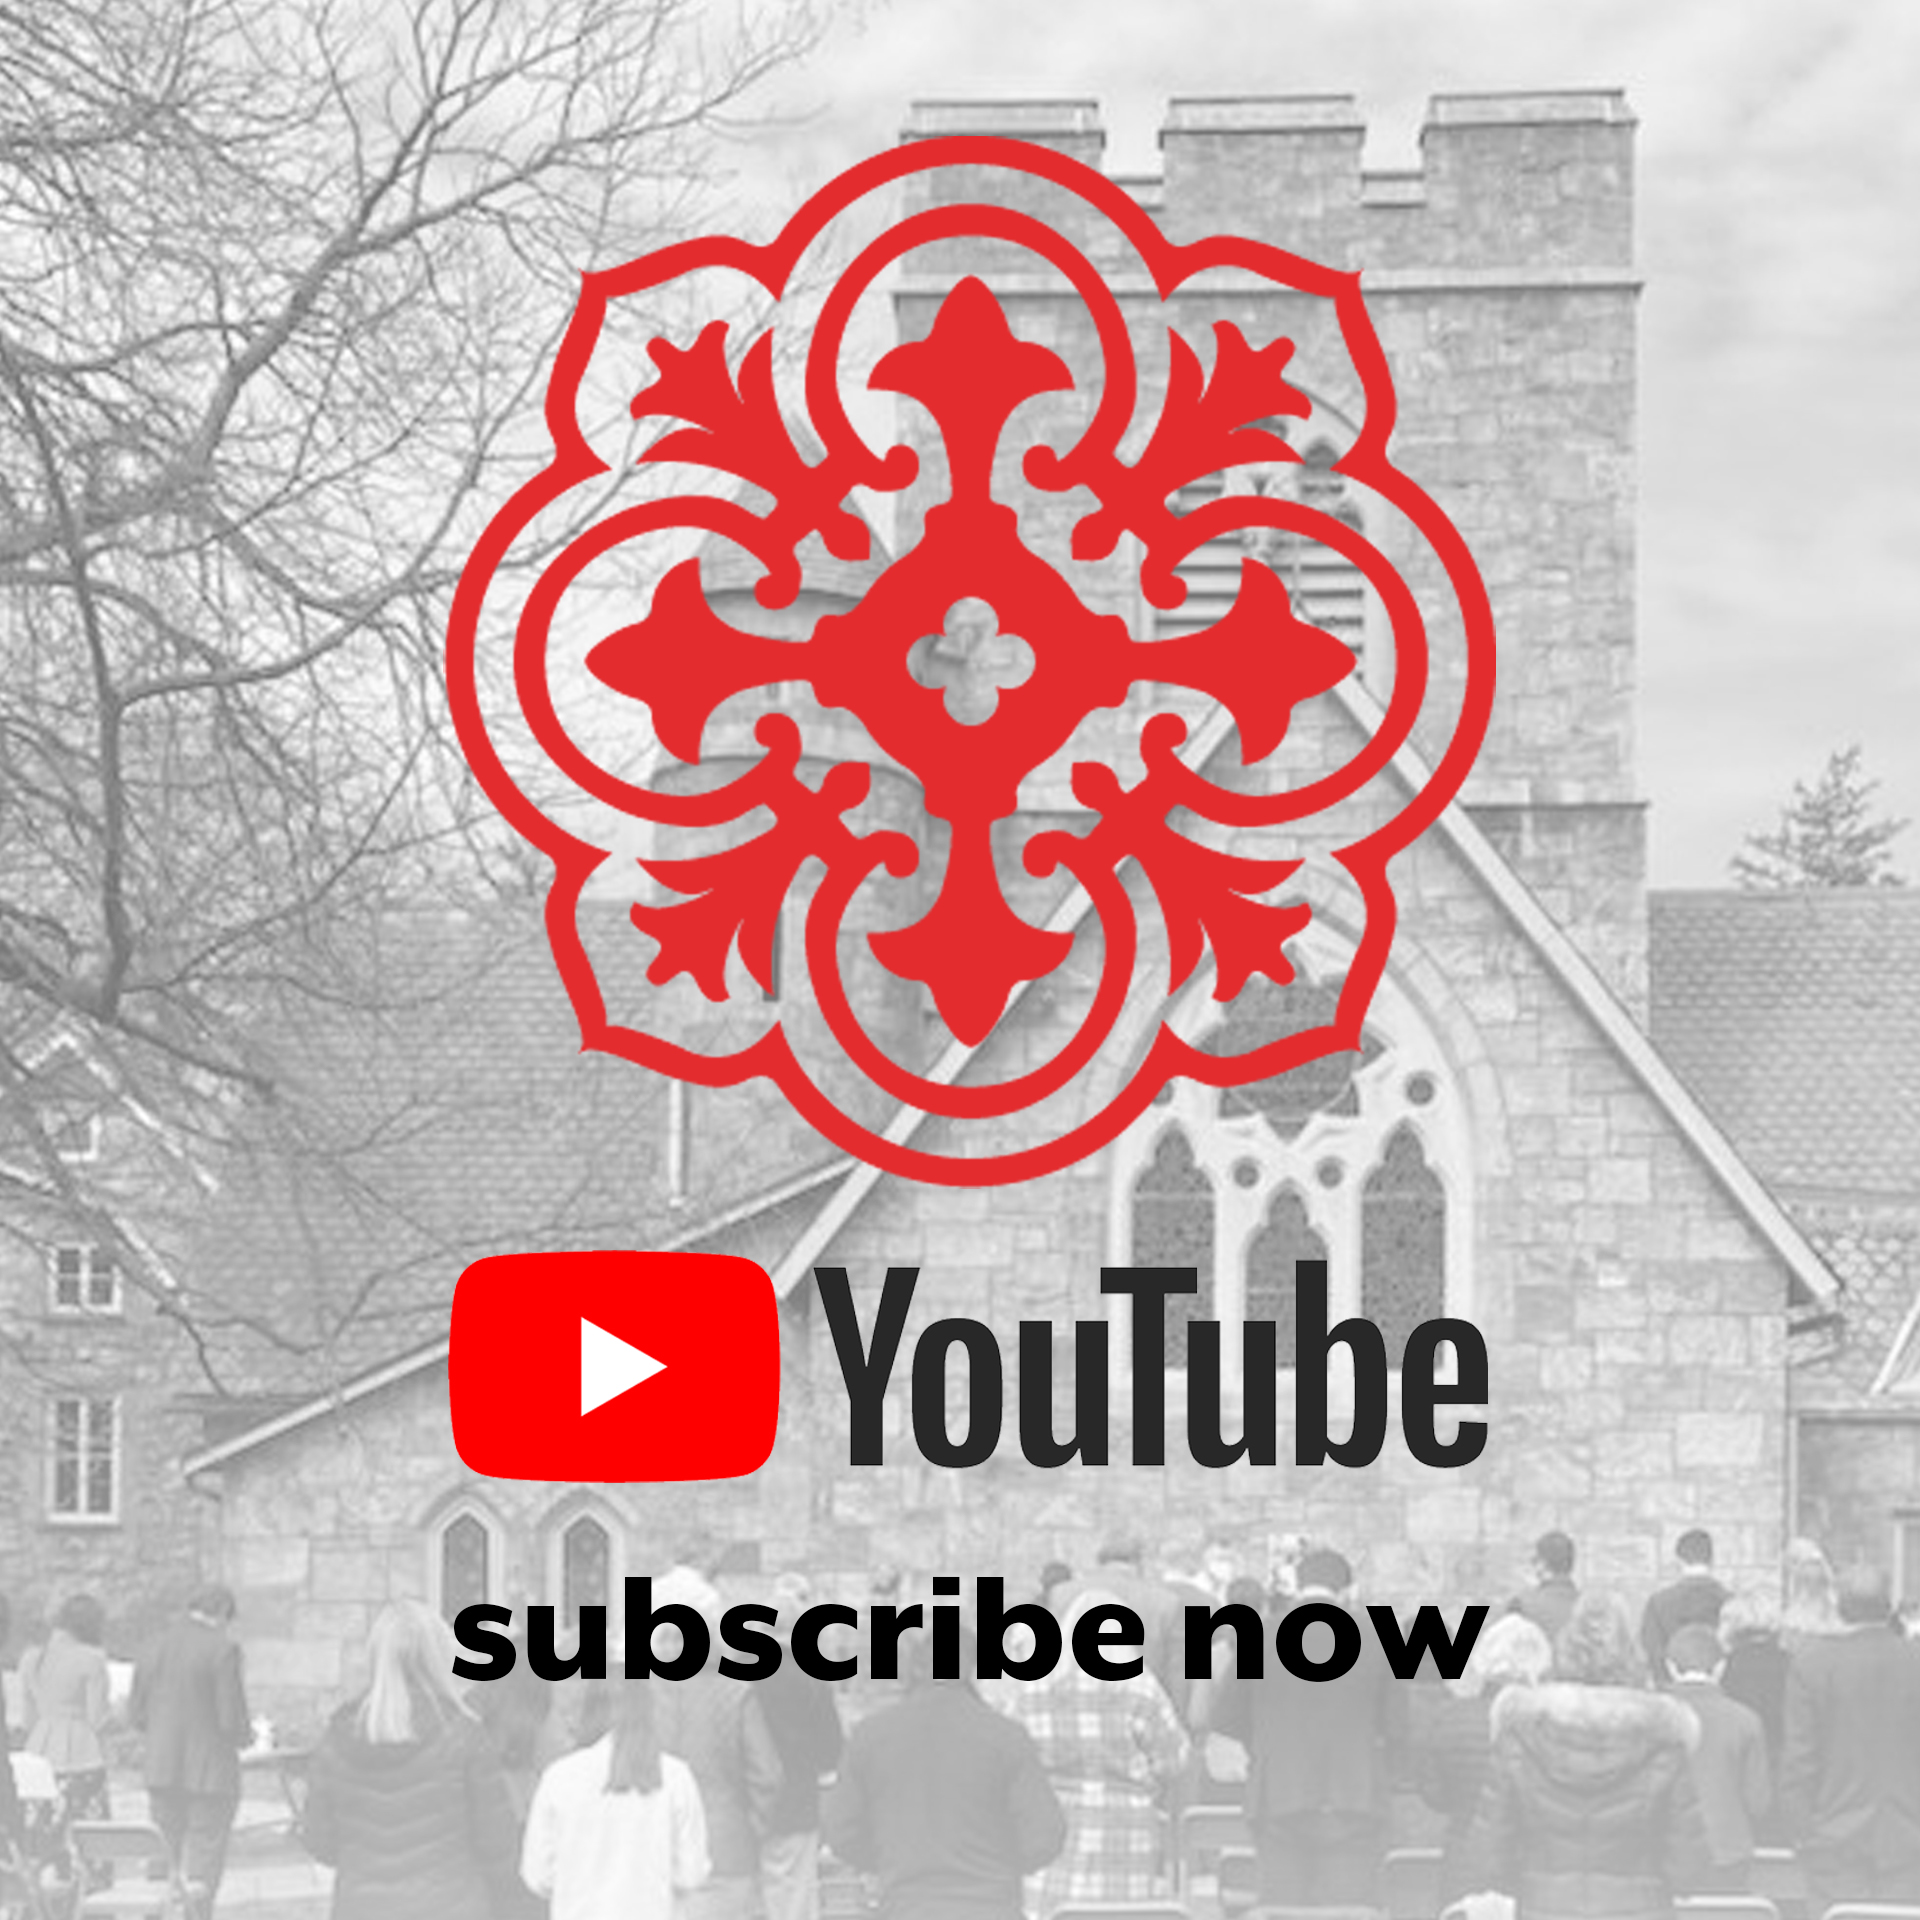 St Barnabas YouTube Channel image v2